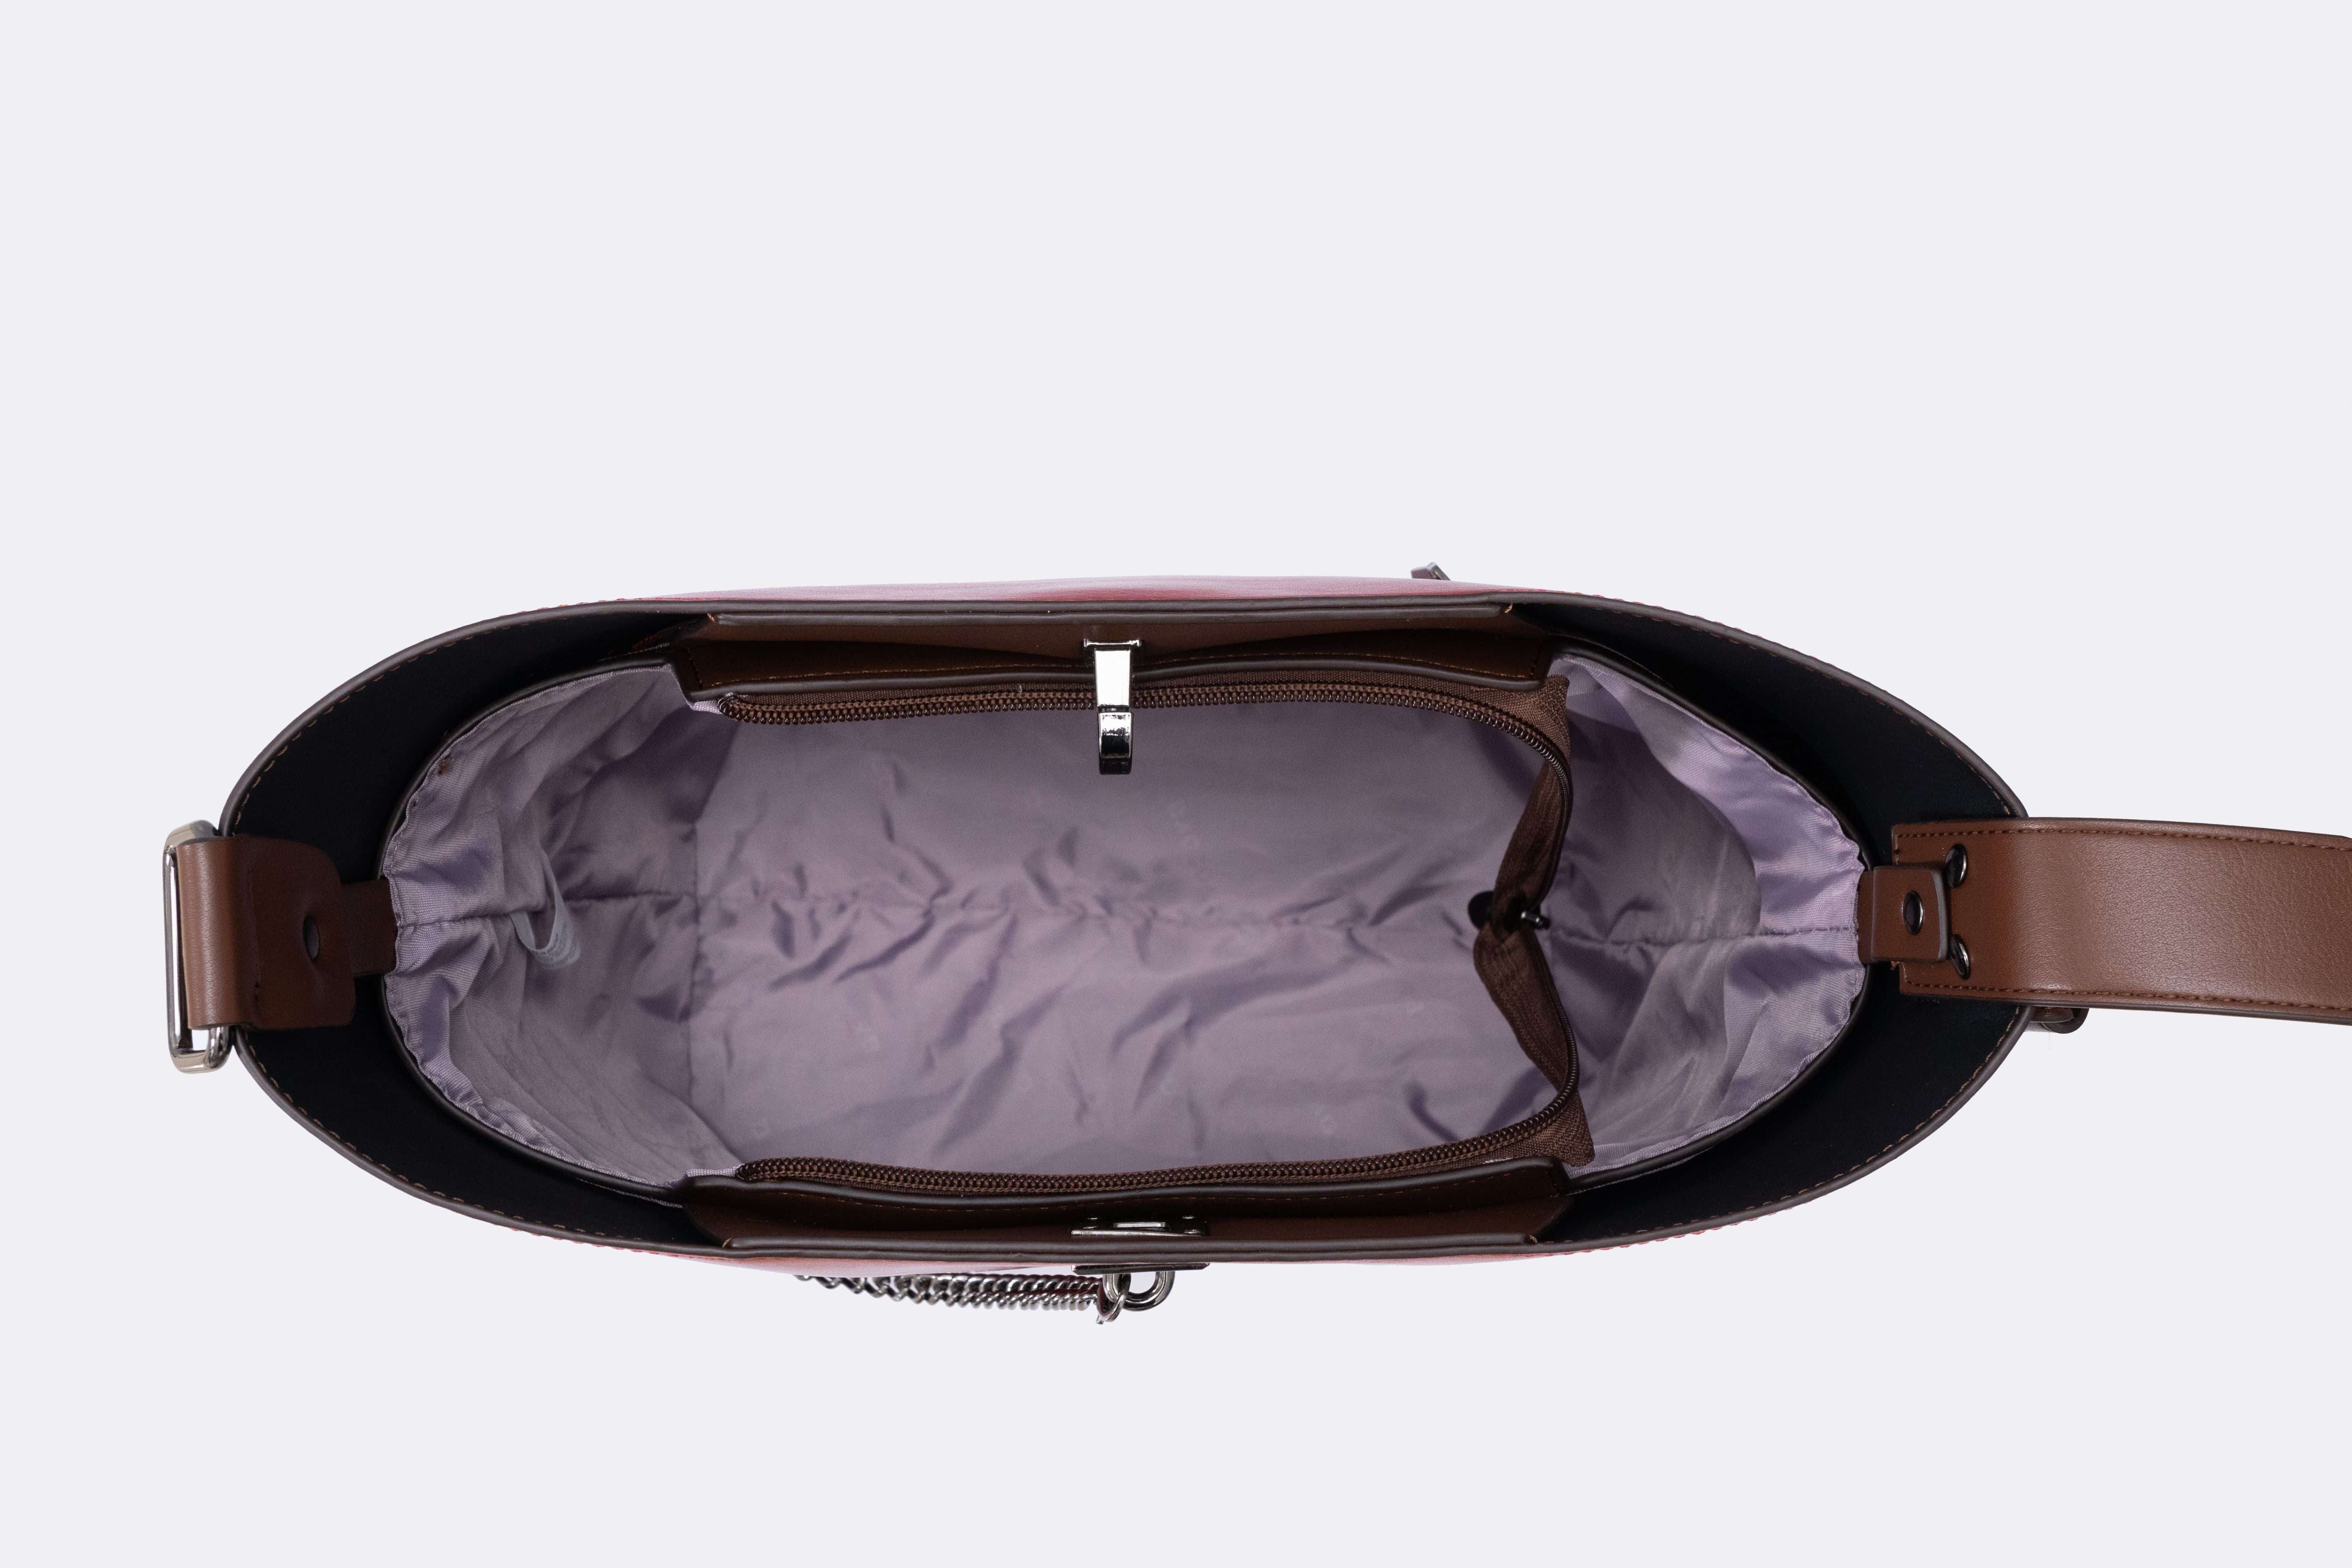 حقيبة نسائية باللون البنى الغامق مربعة الشكل بحجم متوسط وتصميم أنيق - KSA